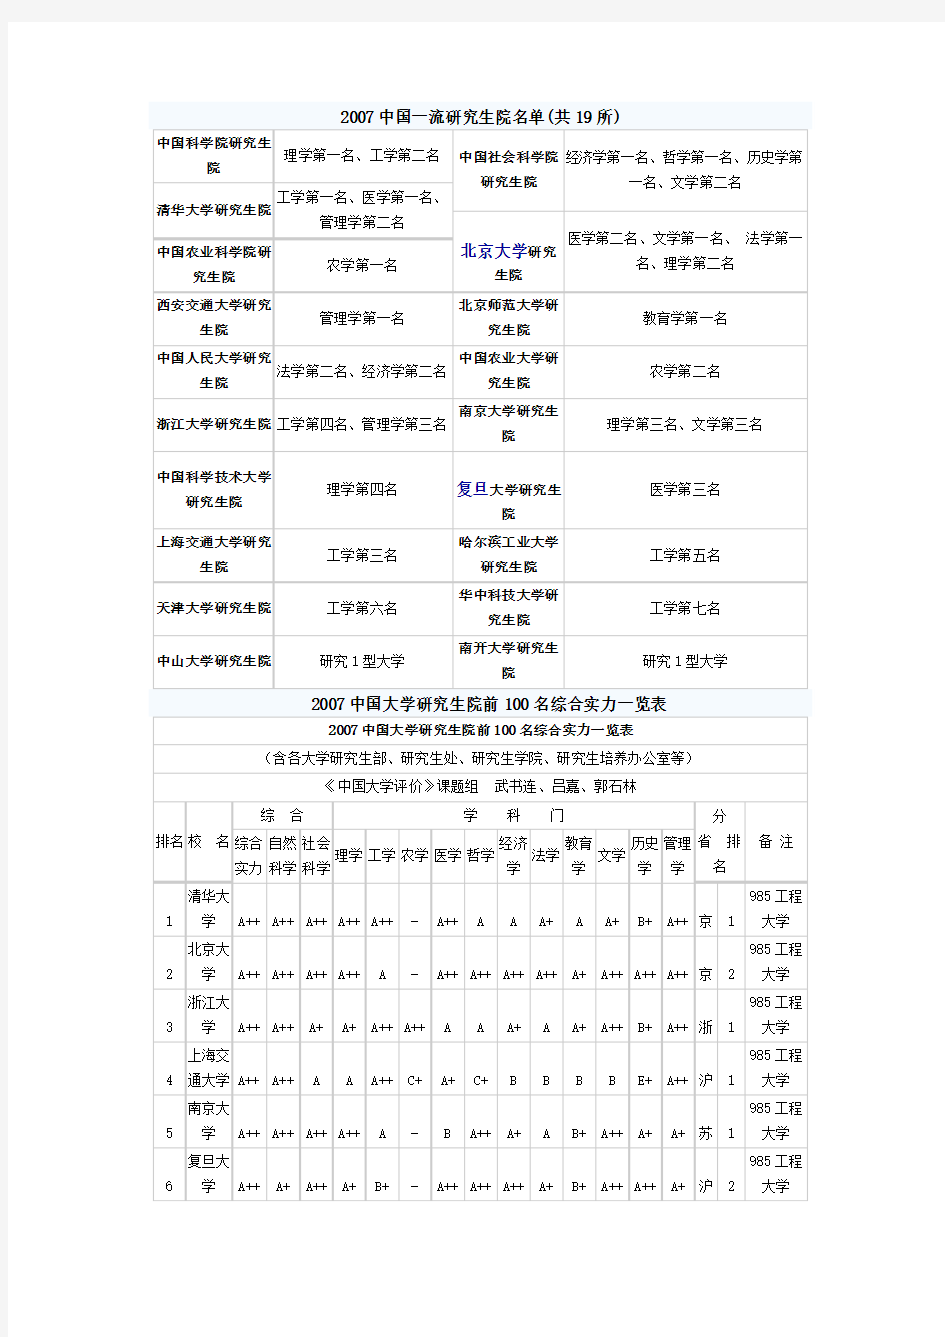 2007中国一流研究生院名单